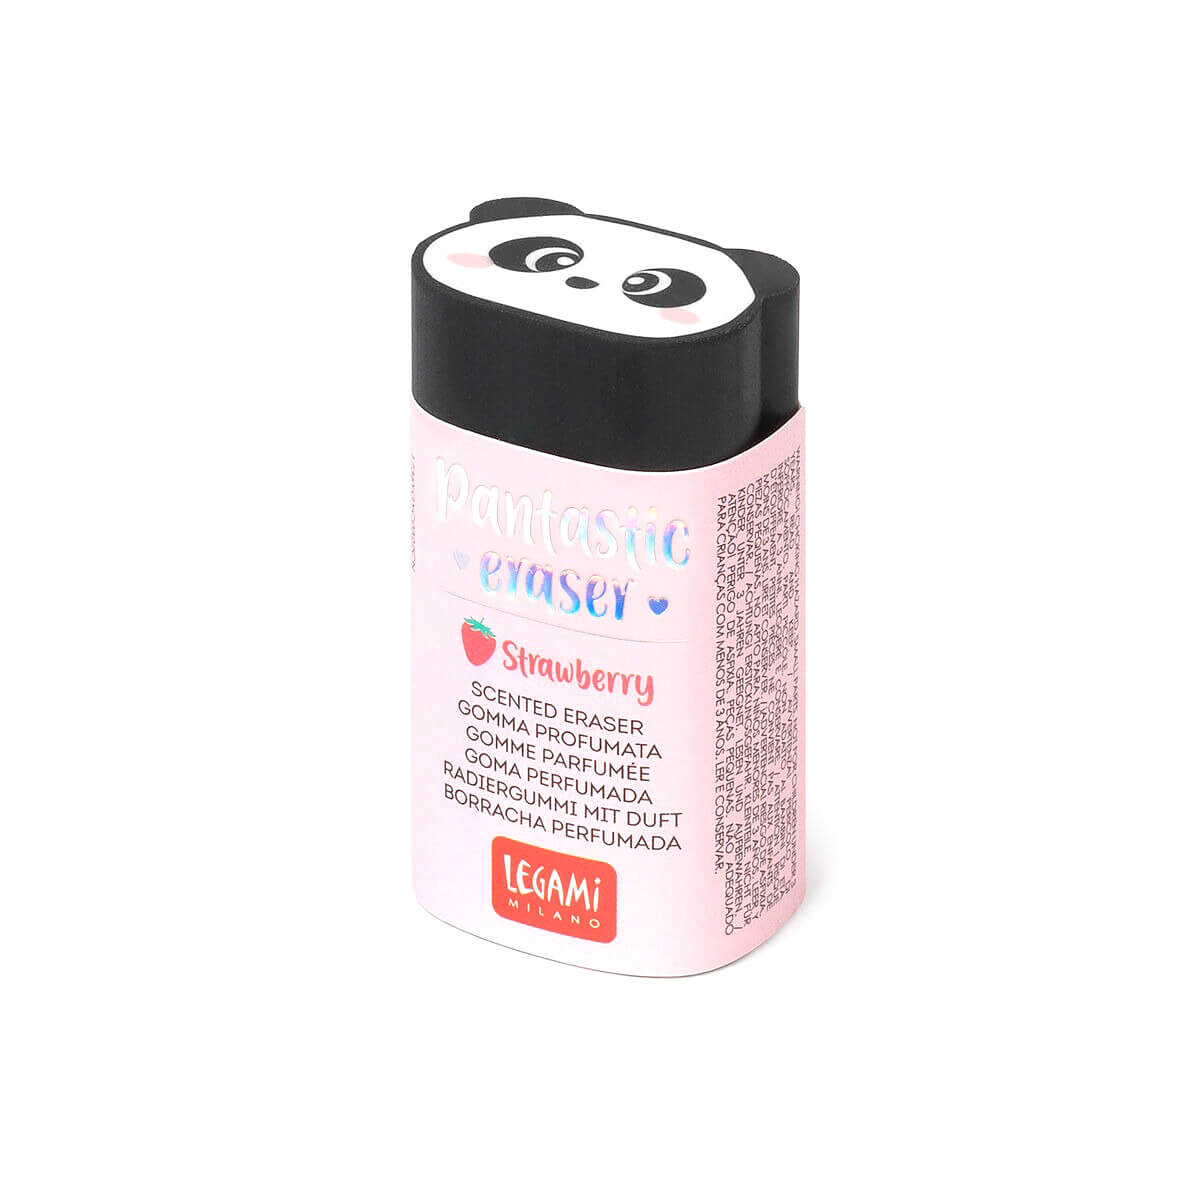 LEGAMI Jelly Friends – Scented Eraser Unicorn